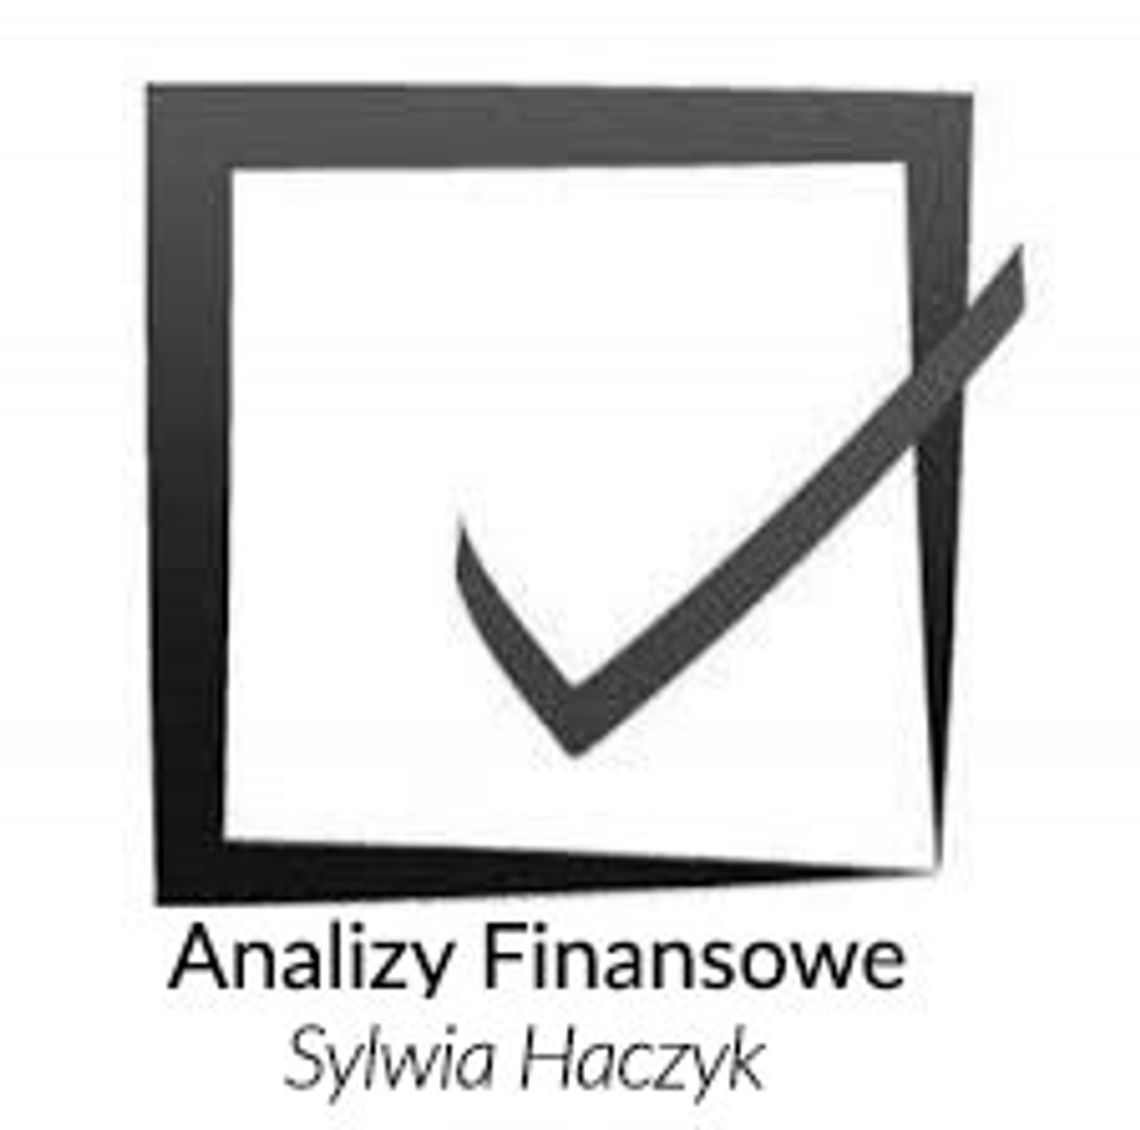 Analizy Finansowe Sylwia Haczyk